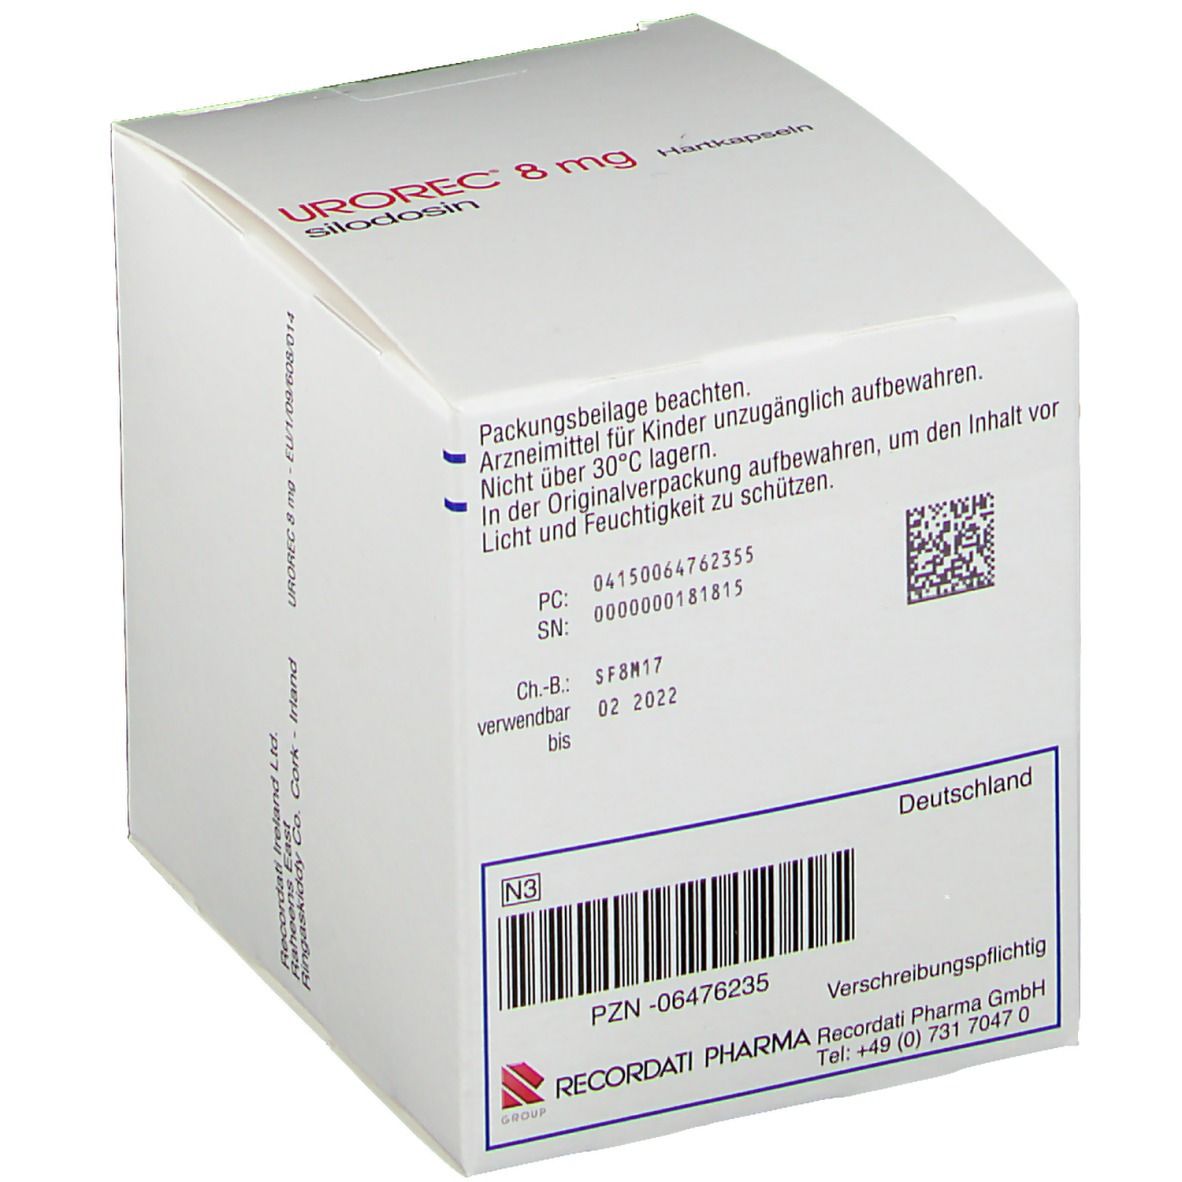 UROREC® 8 mg